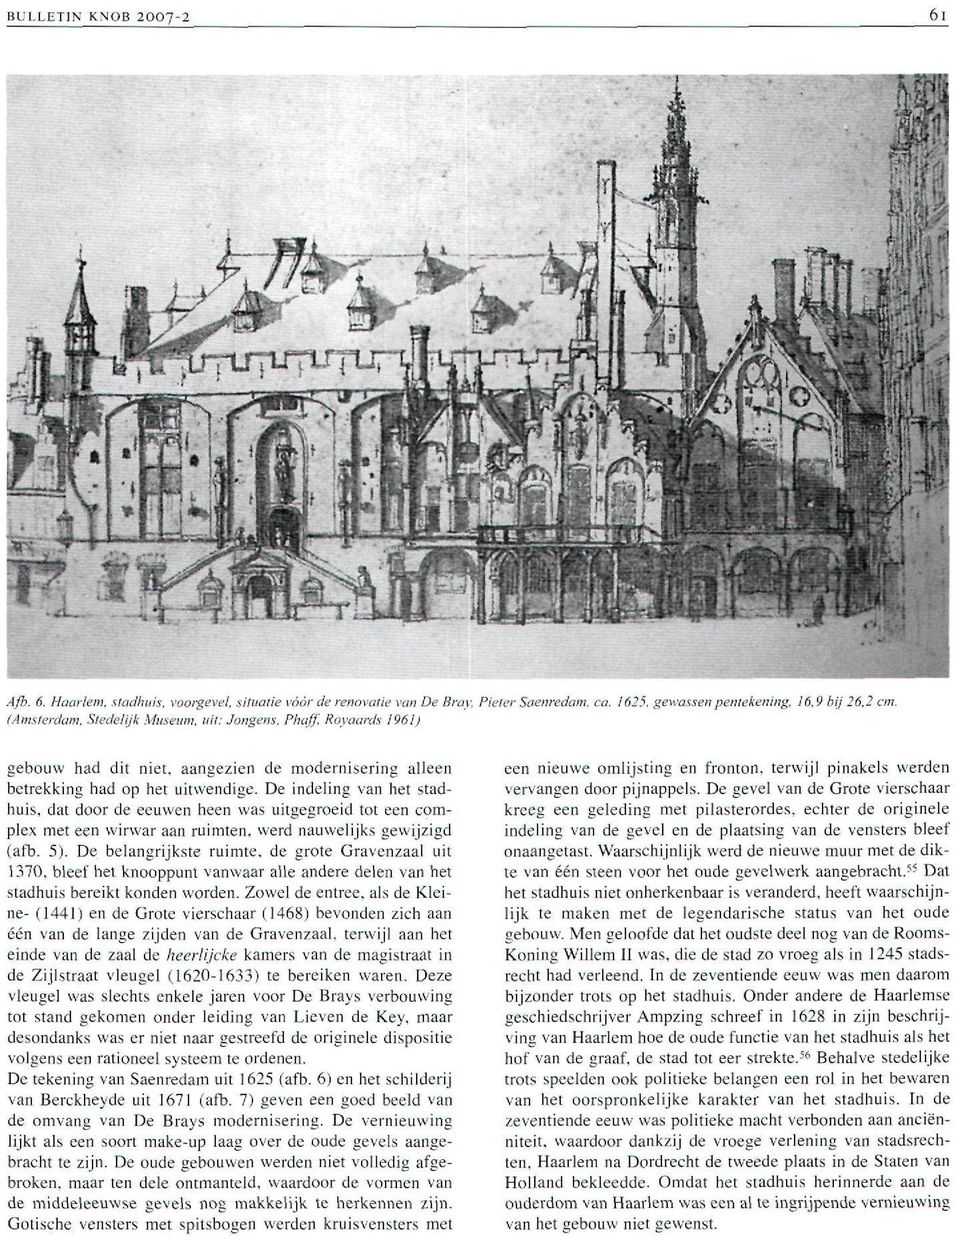 De indeling van het stadhuis, dat door de eeuwen heen was uitgegroeid tot een complex met een wirwar aan ruimten, werd nauwelijks gewijzigd (afb. 5).